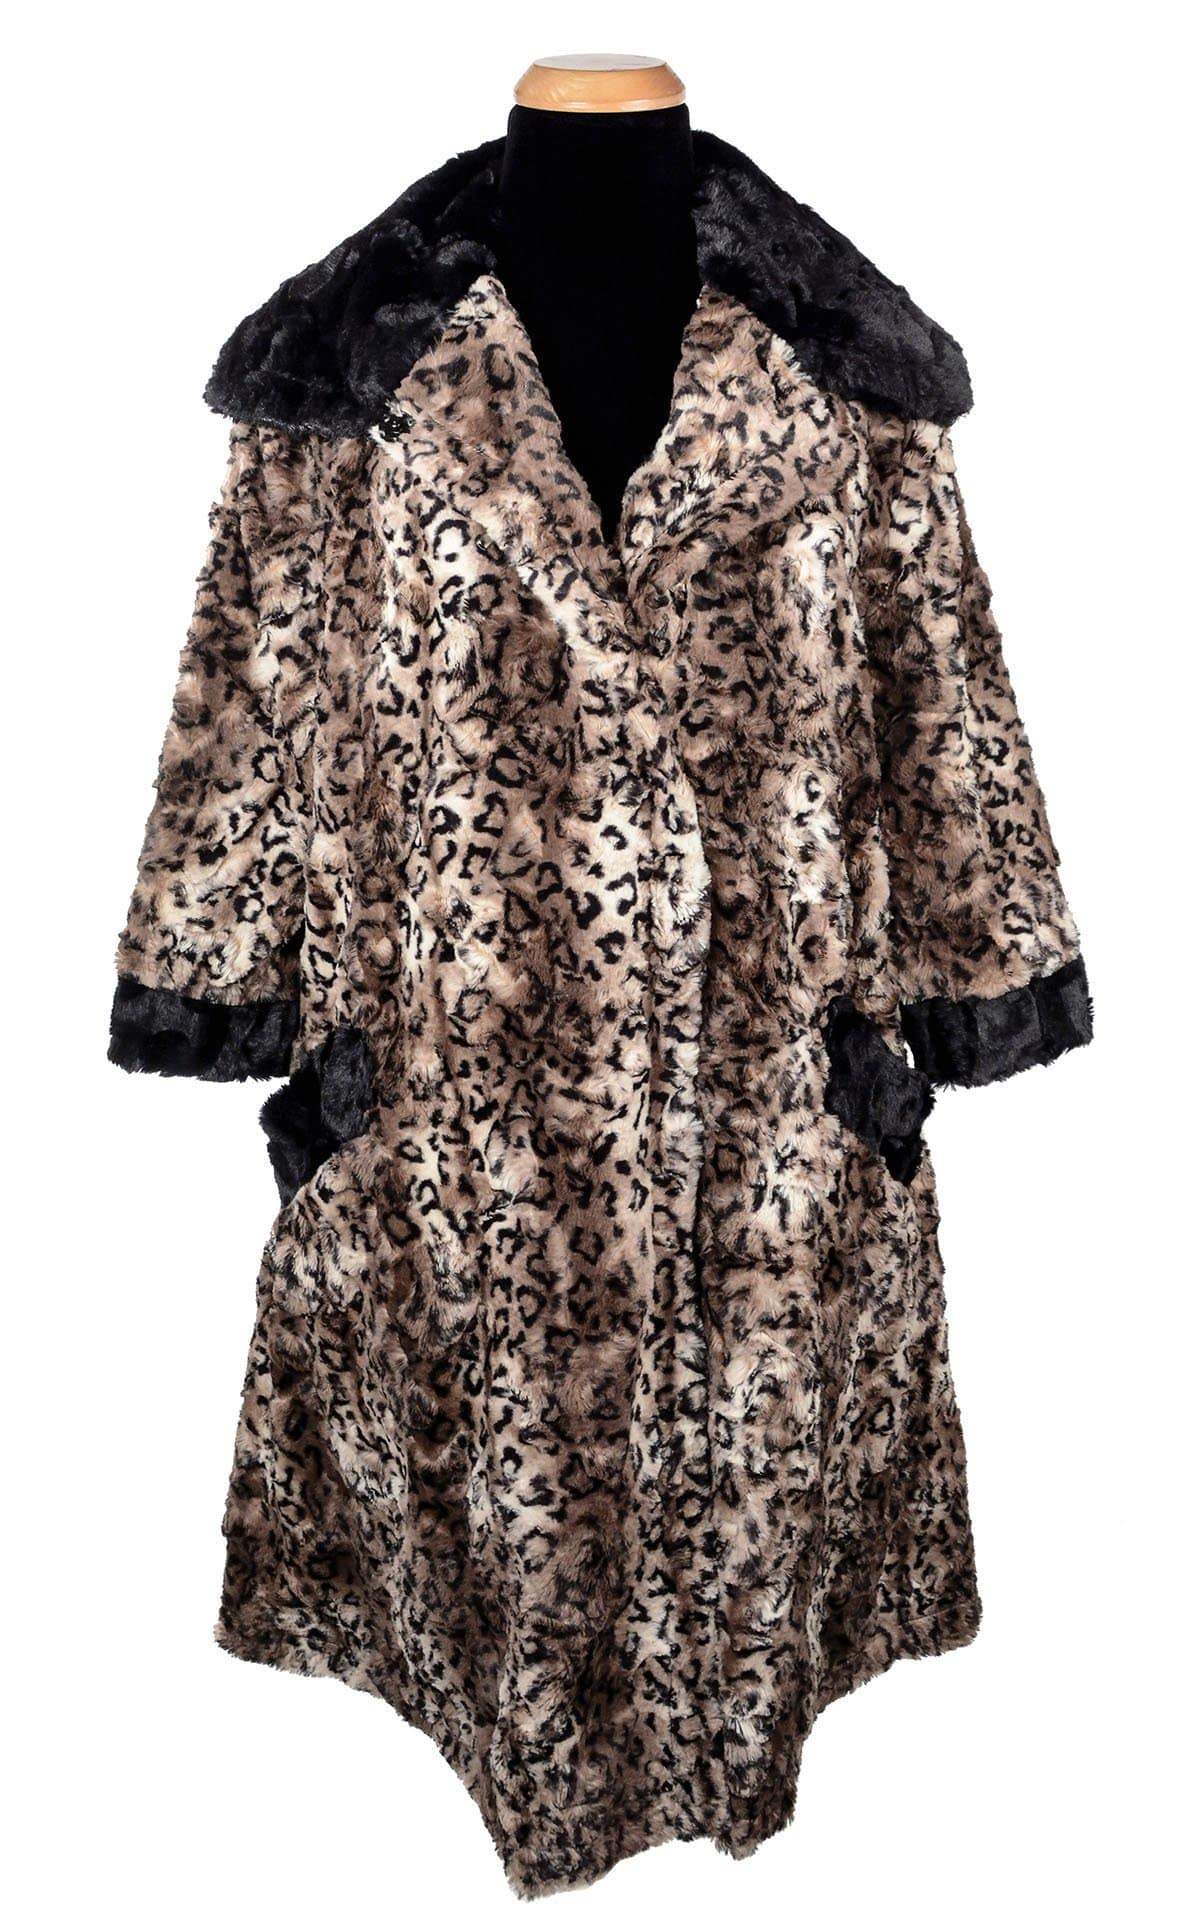 Crawford Coat - Luxury Faux Fur in Carpathian Lynx with Cuddly Fur in Black (One Medium Left!)